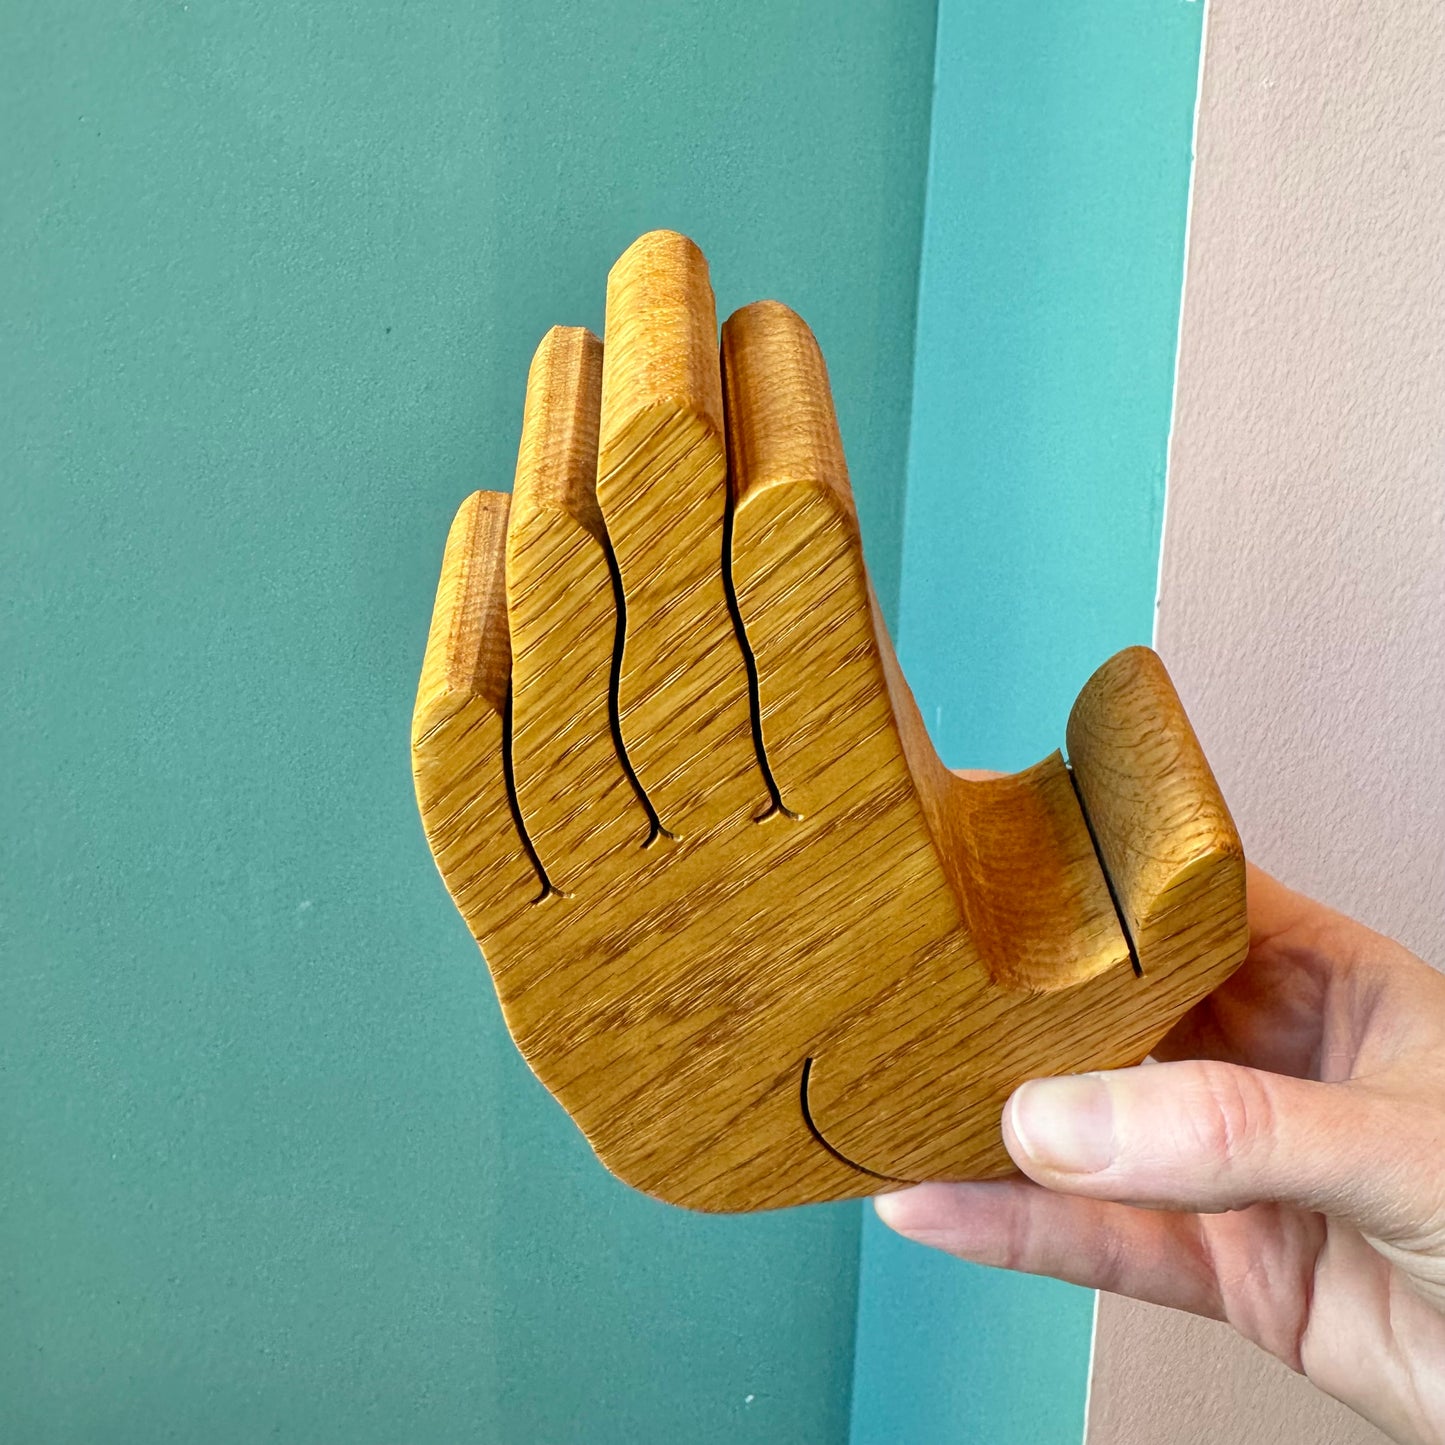 Vintage Wooden Hand Paper Holder